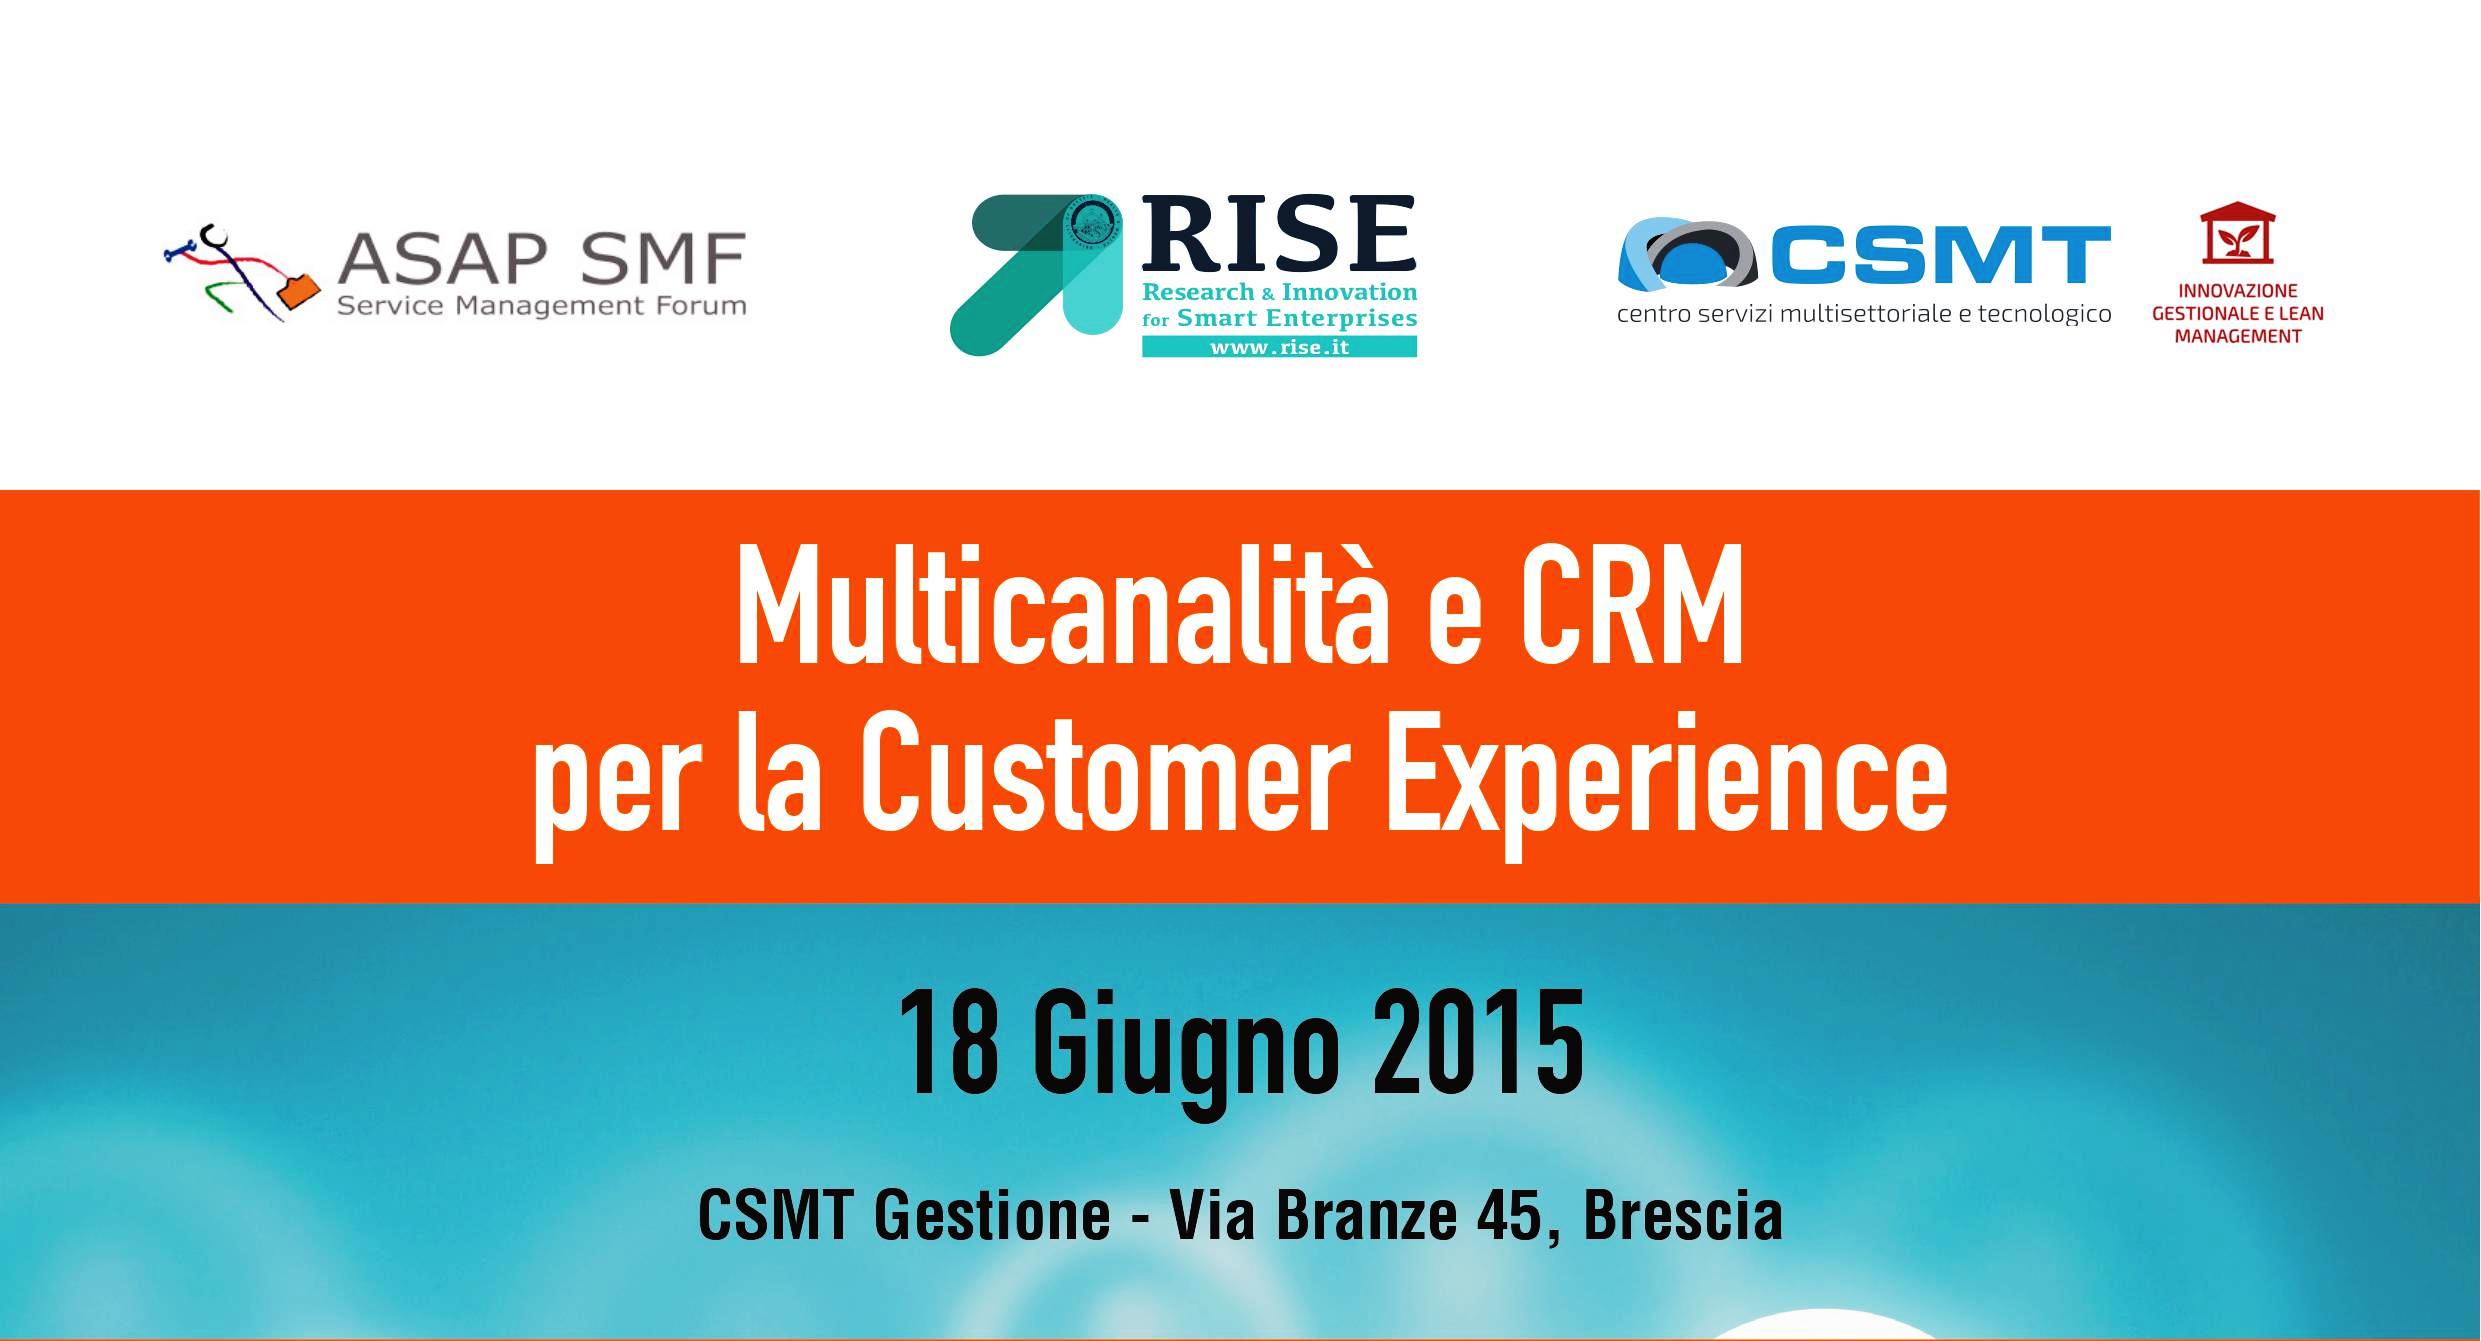 Multicanalità e CRM per la Customer Experience